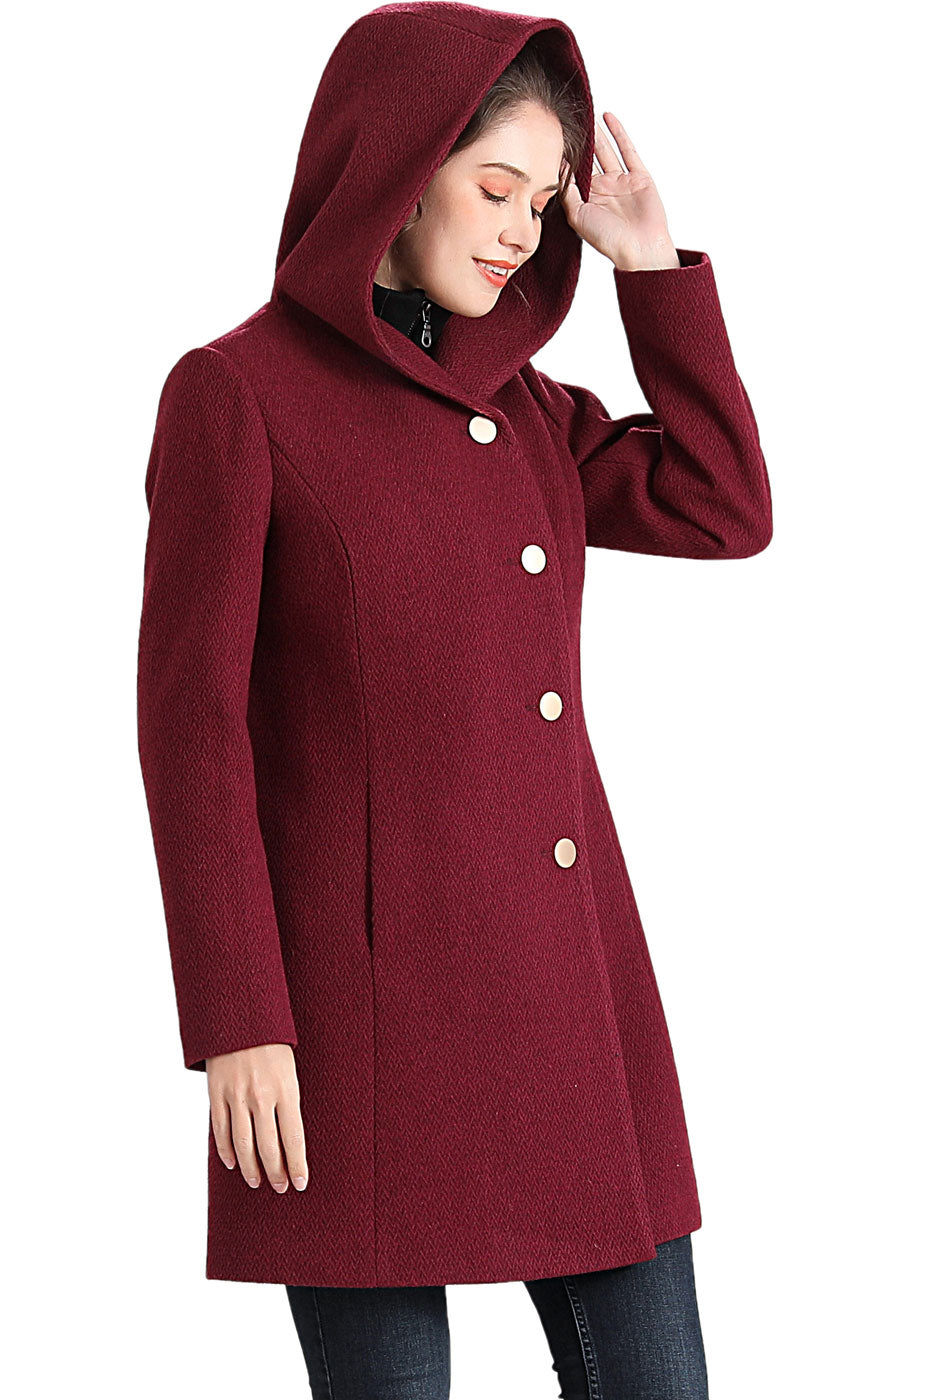 BGSD Women Sol Wool Asymmetrical Hooded Walker Coat